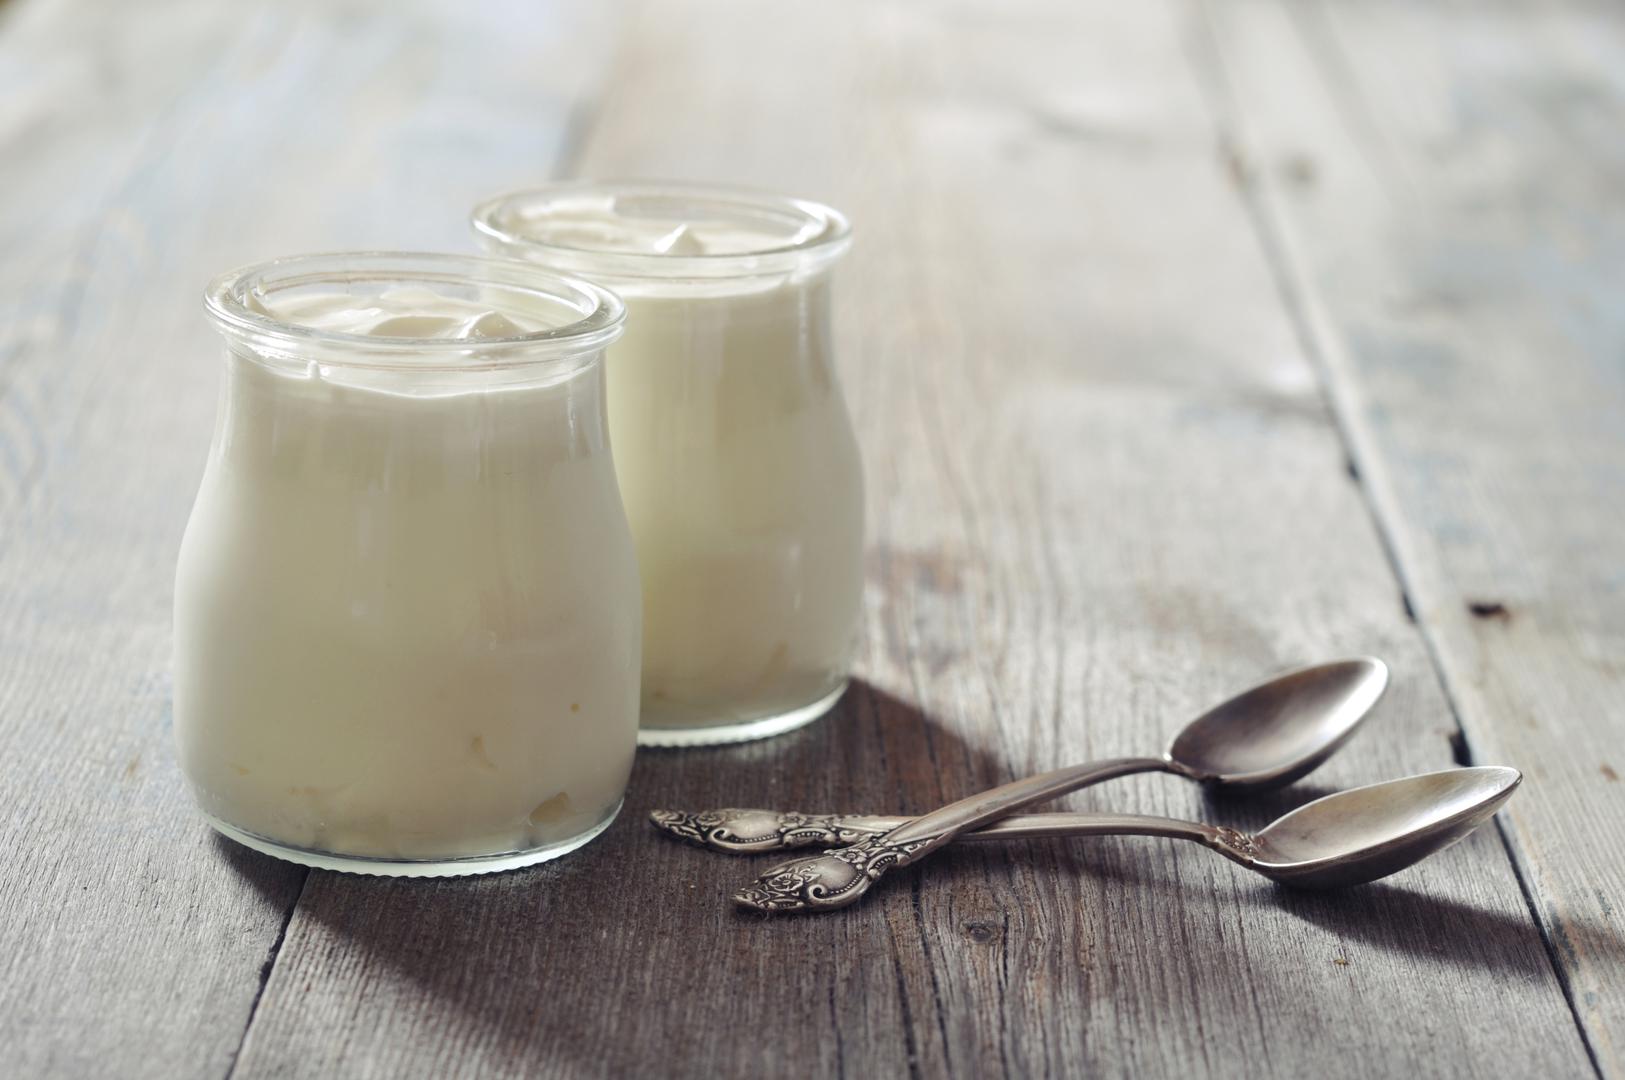 Jogurt  iz punomasnog mlijeka obiluje kalcijem koji štiti zube i kosti, ali sadrži i probiotike koji potiču rad probavnog sustava.

